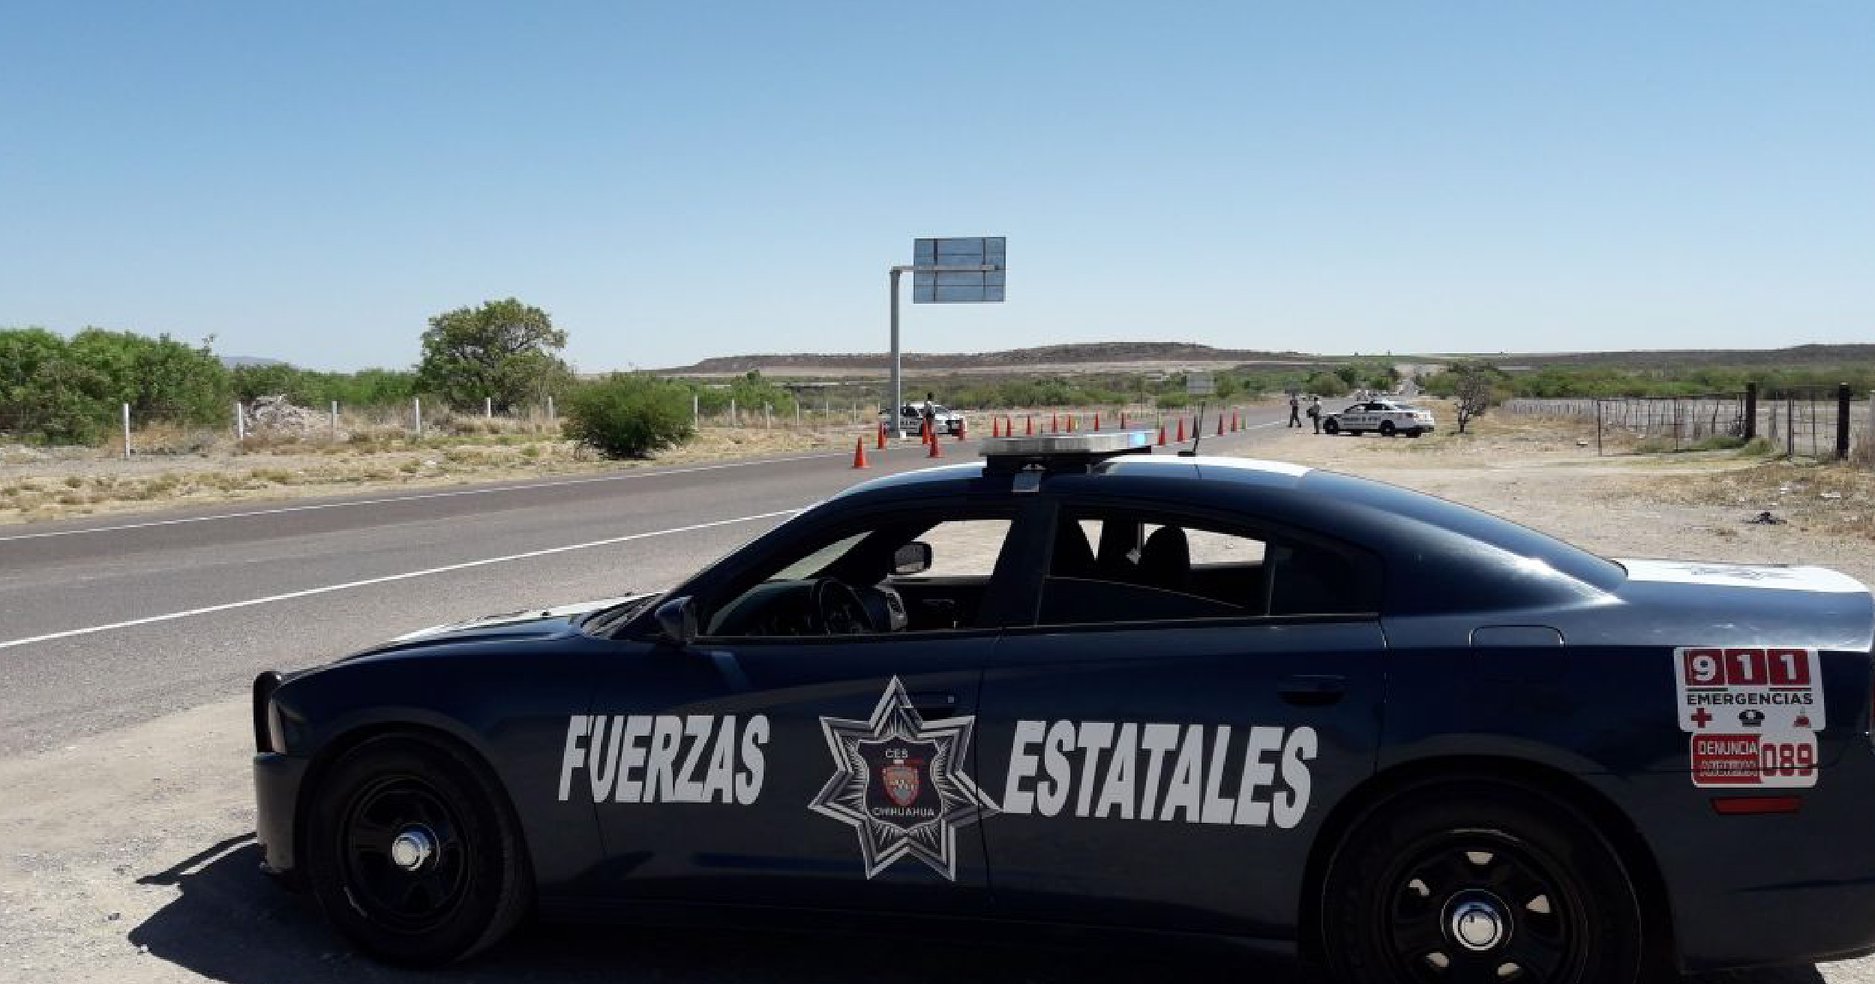 Foto: Operativo de seguridad en Chihuahua, 26 de febrero 2019. Facebook (Comisión Estatal de Seguridad Chihuahua)